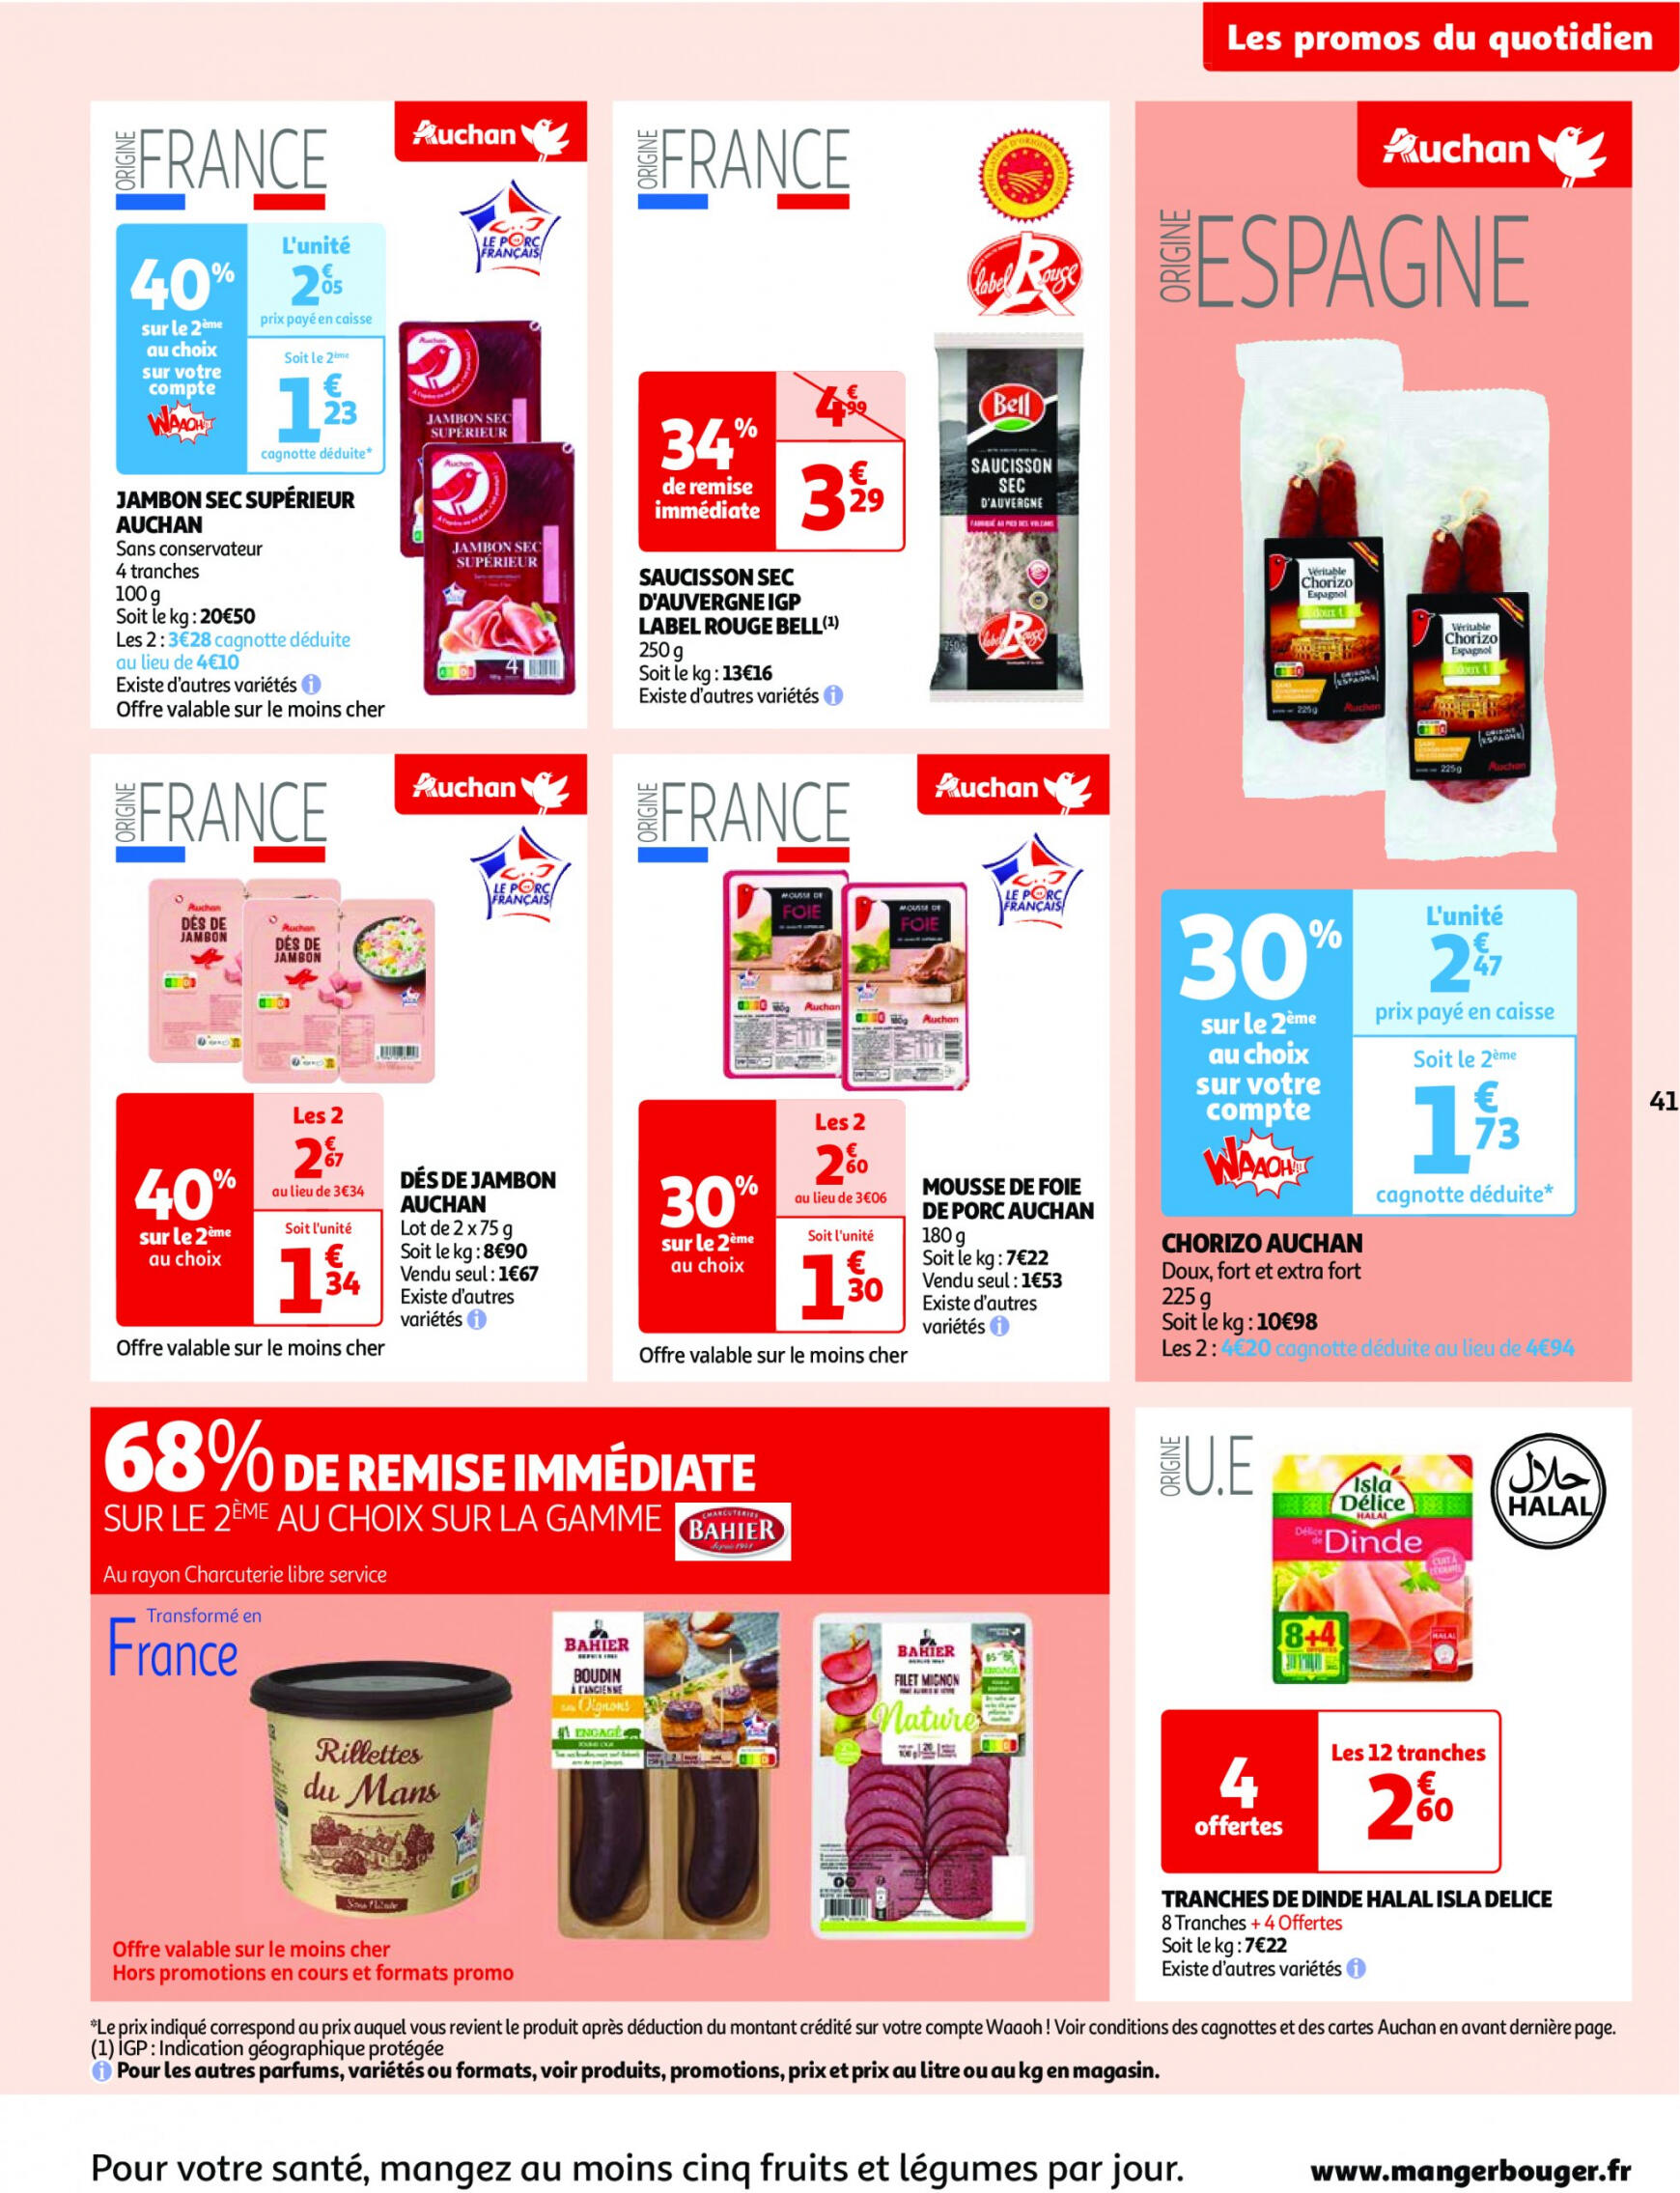 auchan - Prospectus Auchan actuel 30.04. - 06.05. - page: 41